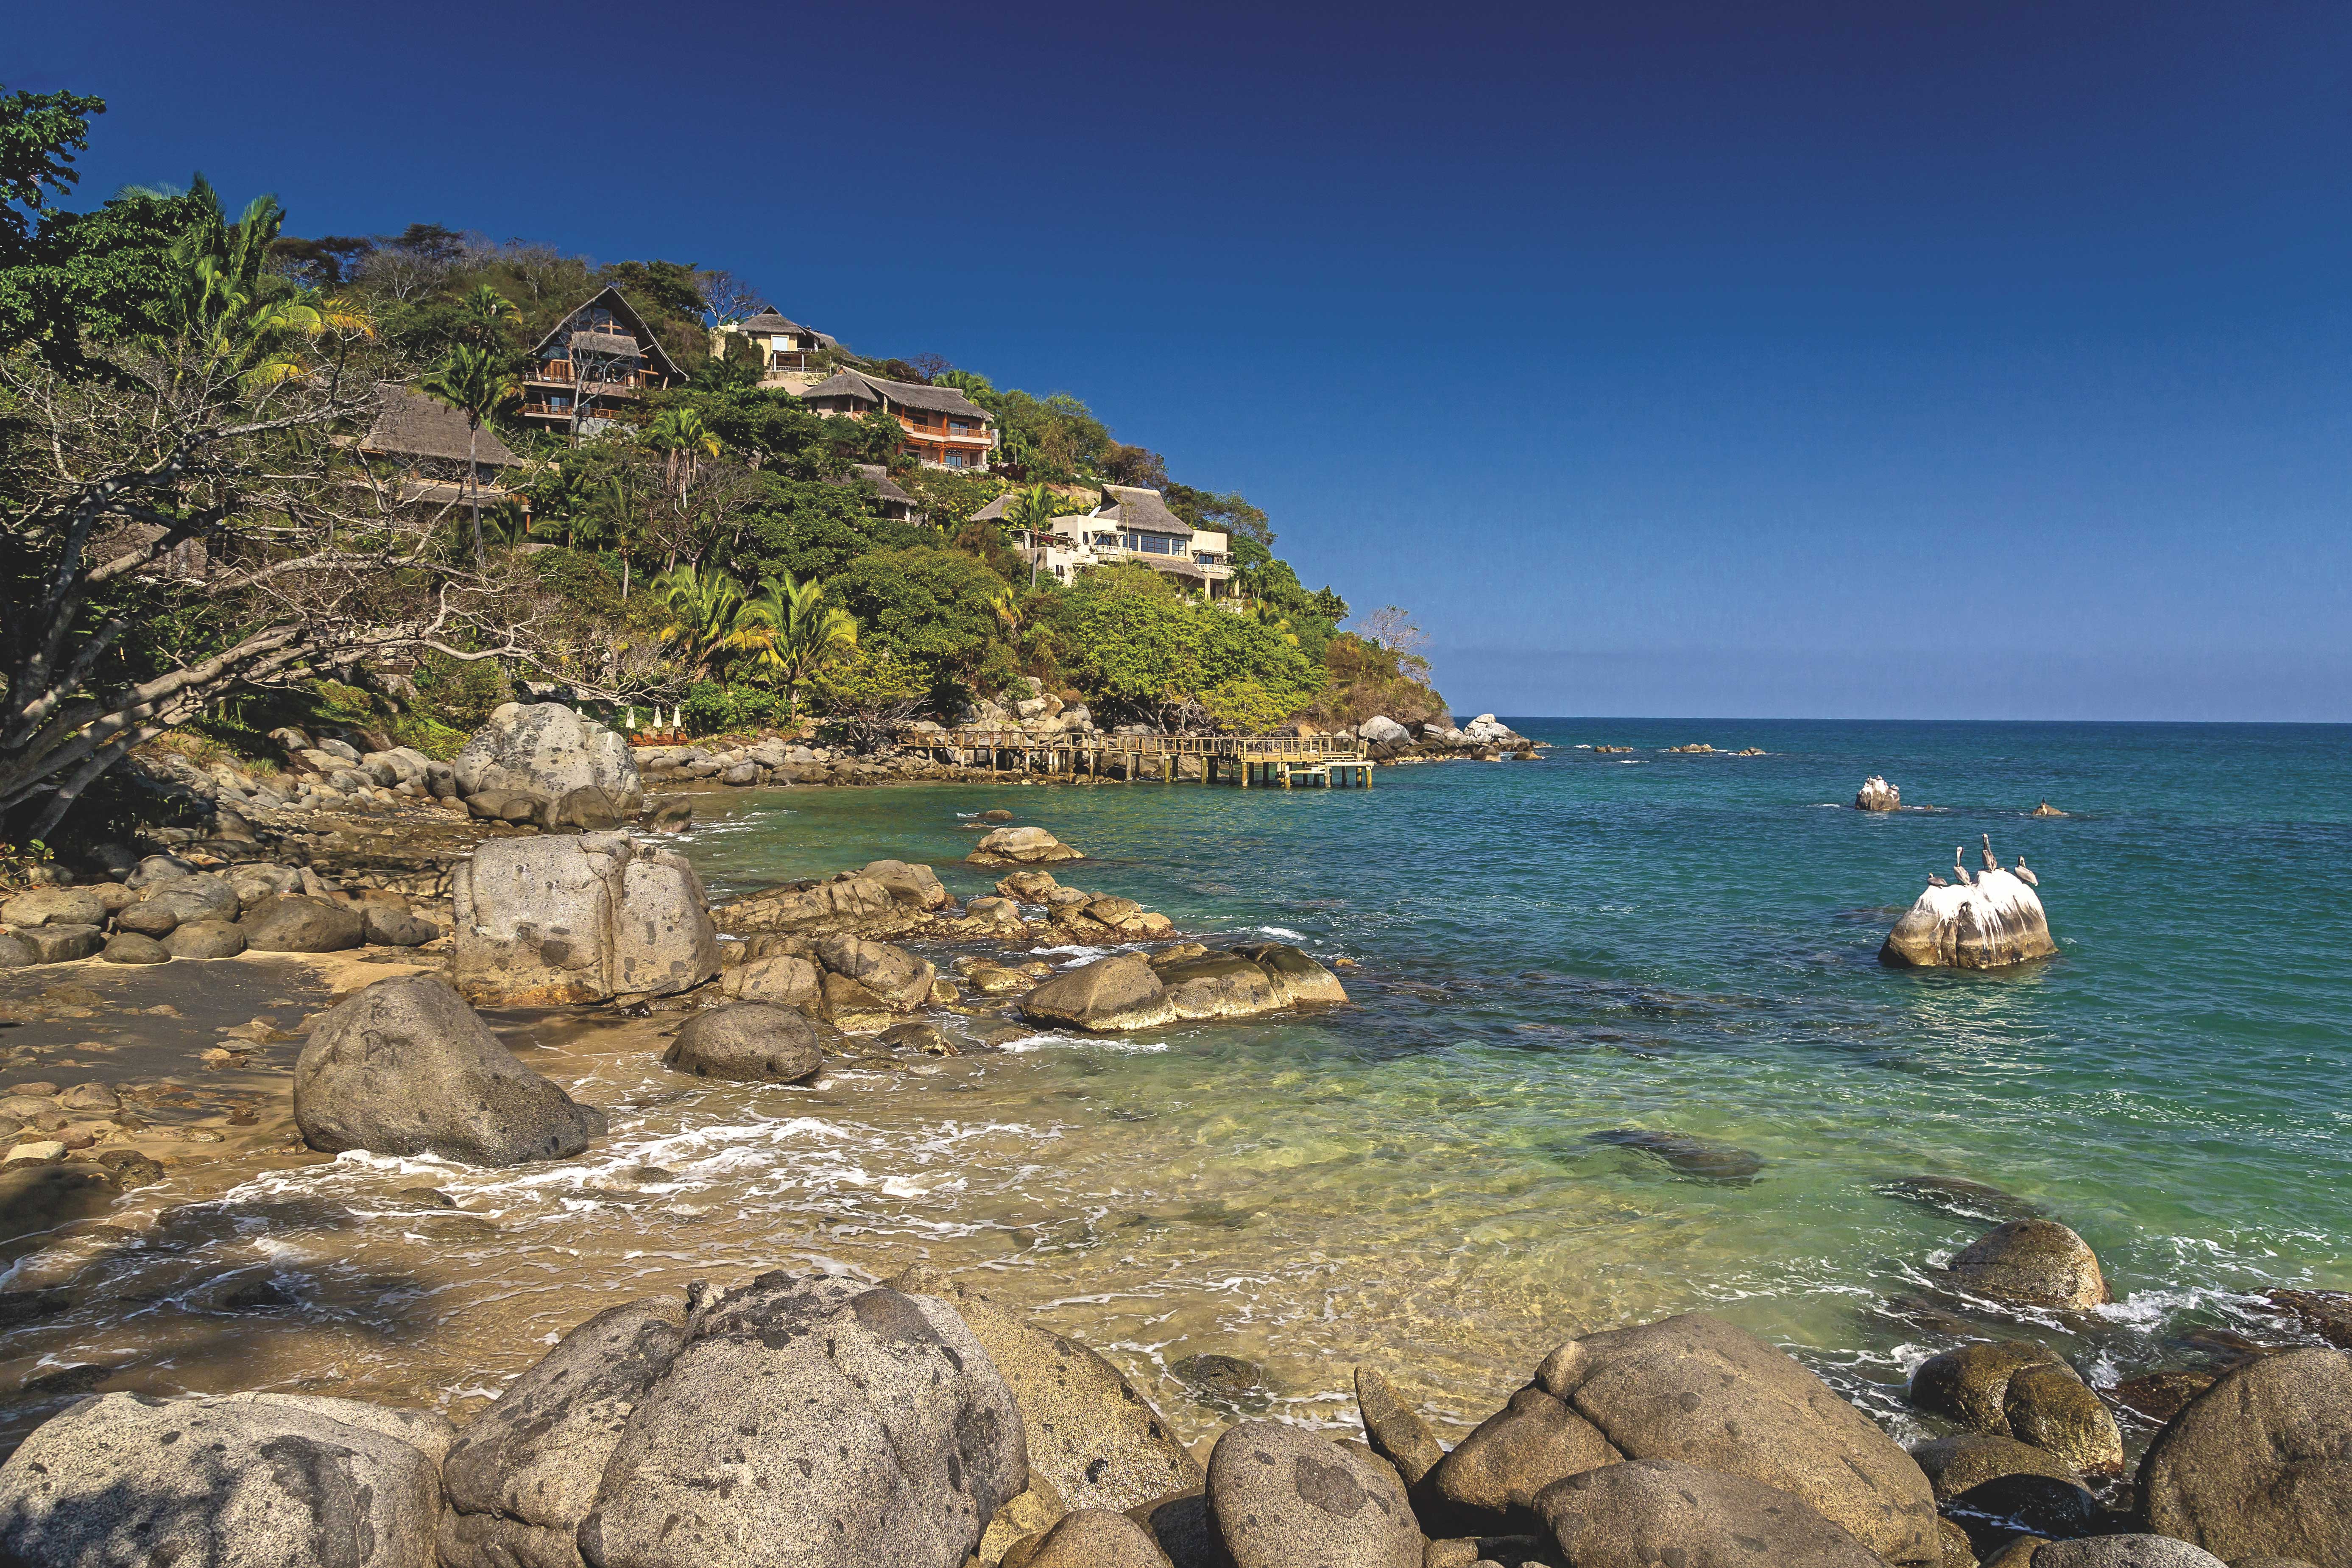 Excursions to the beach: 5 little-known paradises, vallarta lifestyles, puerto vallarta